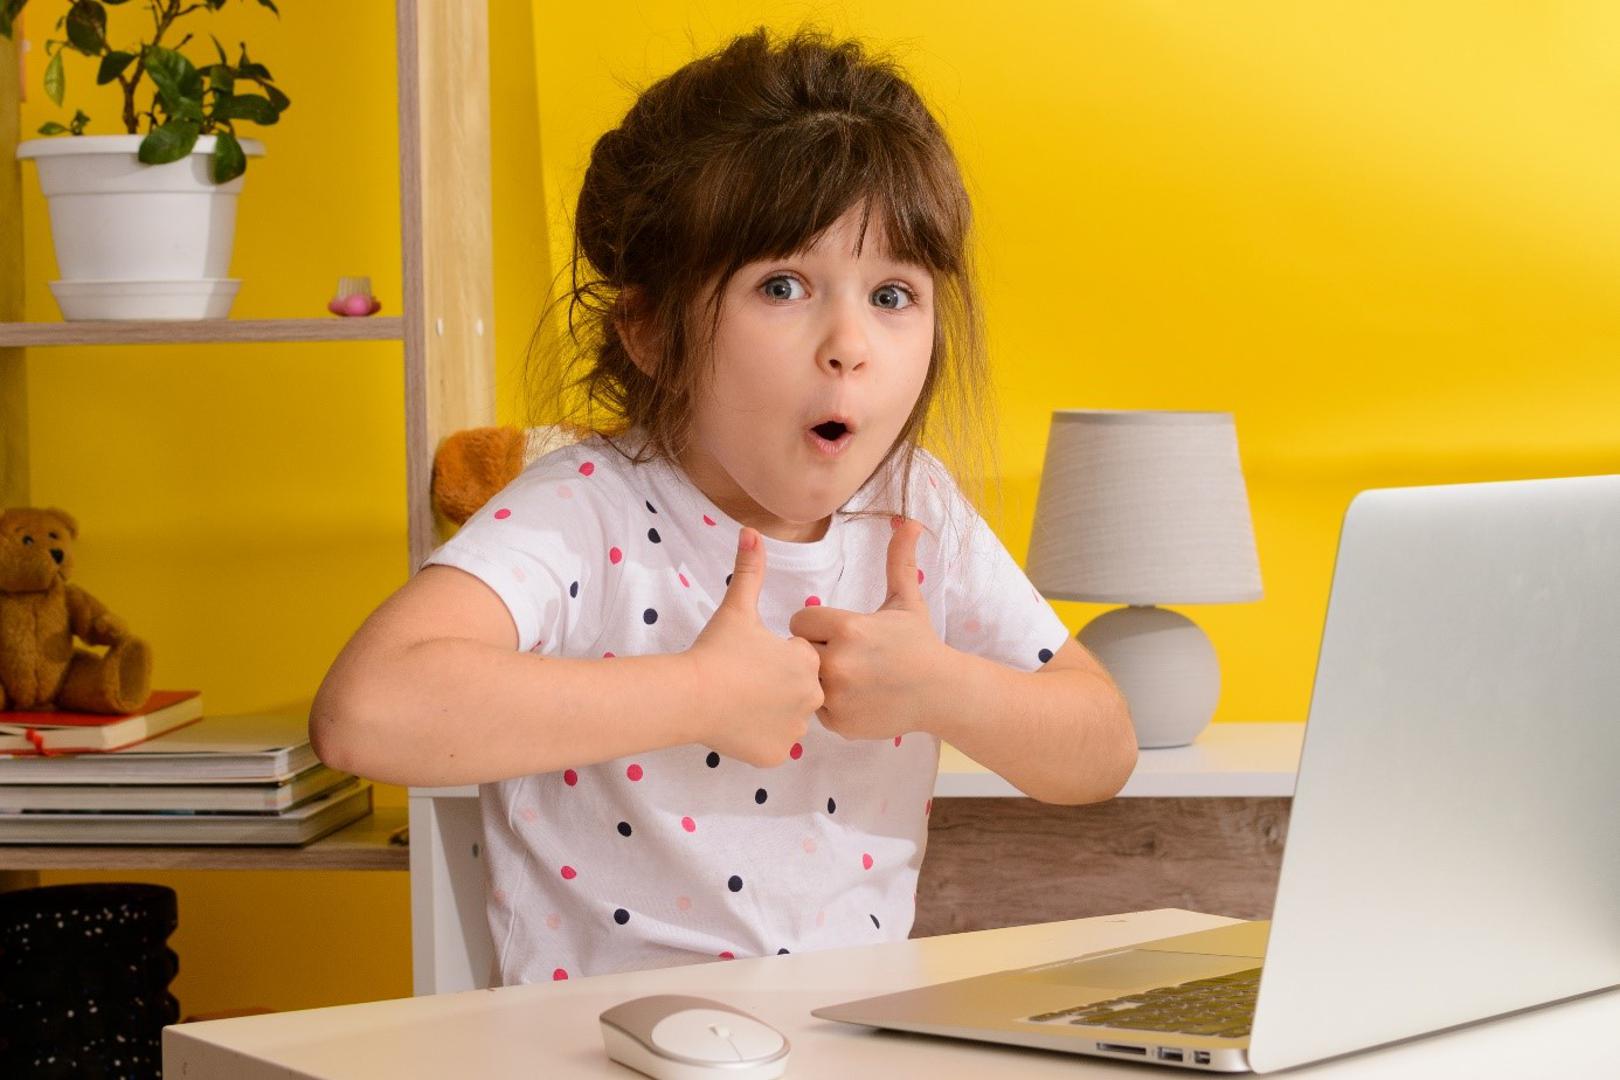 Online igre najčešće predstavljaju djetetov prvi susret s internetom.